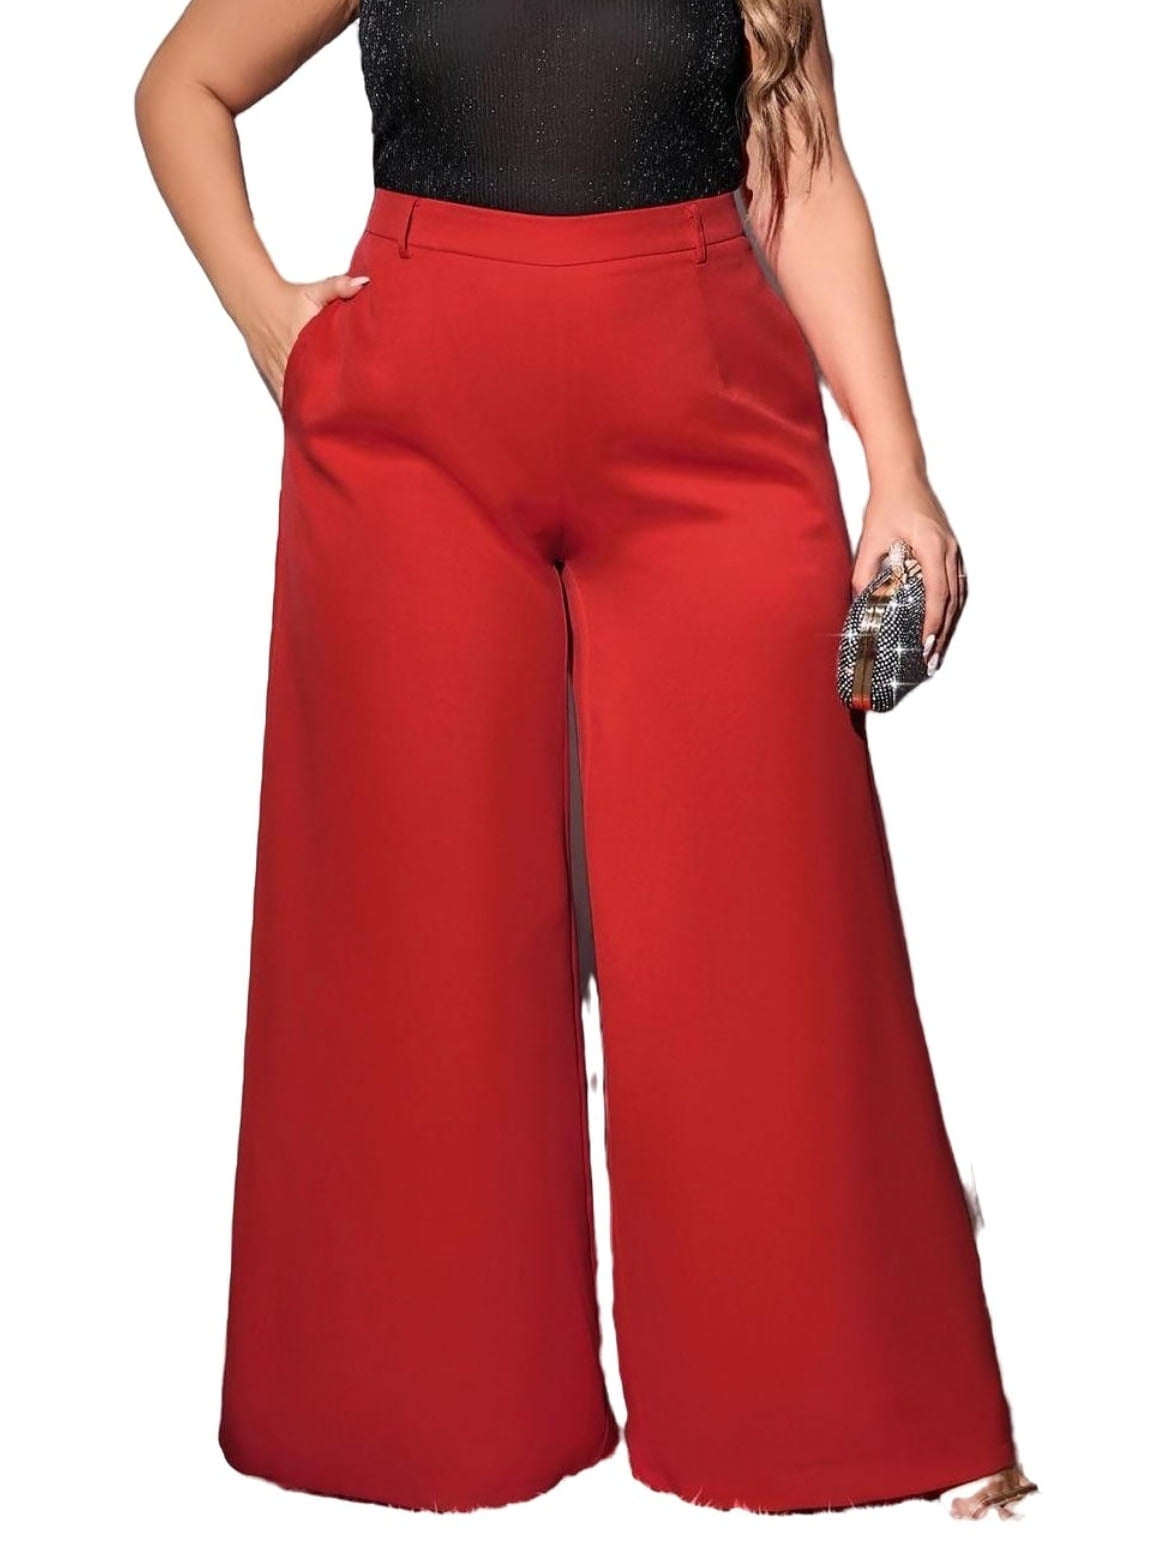 Wholesale-Women Jeans,female Pants,wide Leg Casual Jeans Loose Plus Size Women's  Trousers#E066, $35.53, DHgate.com